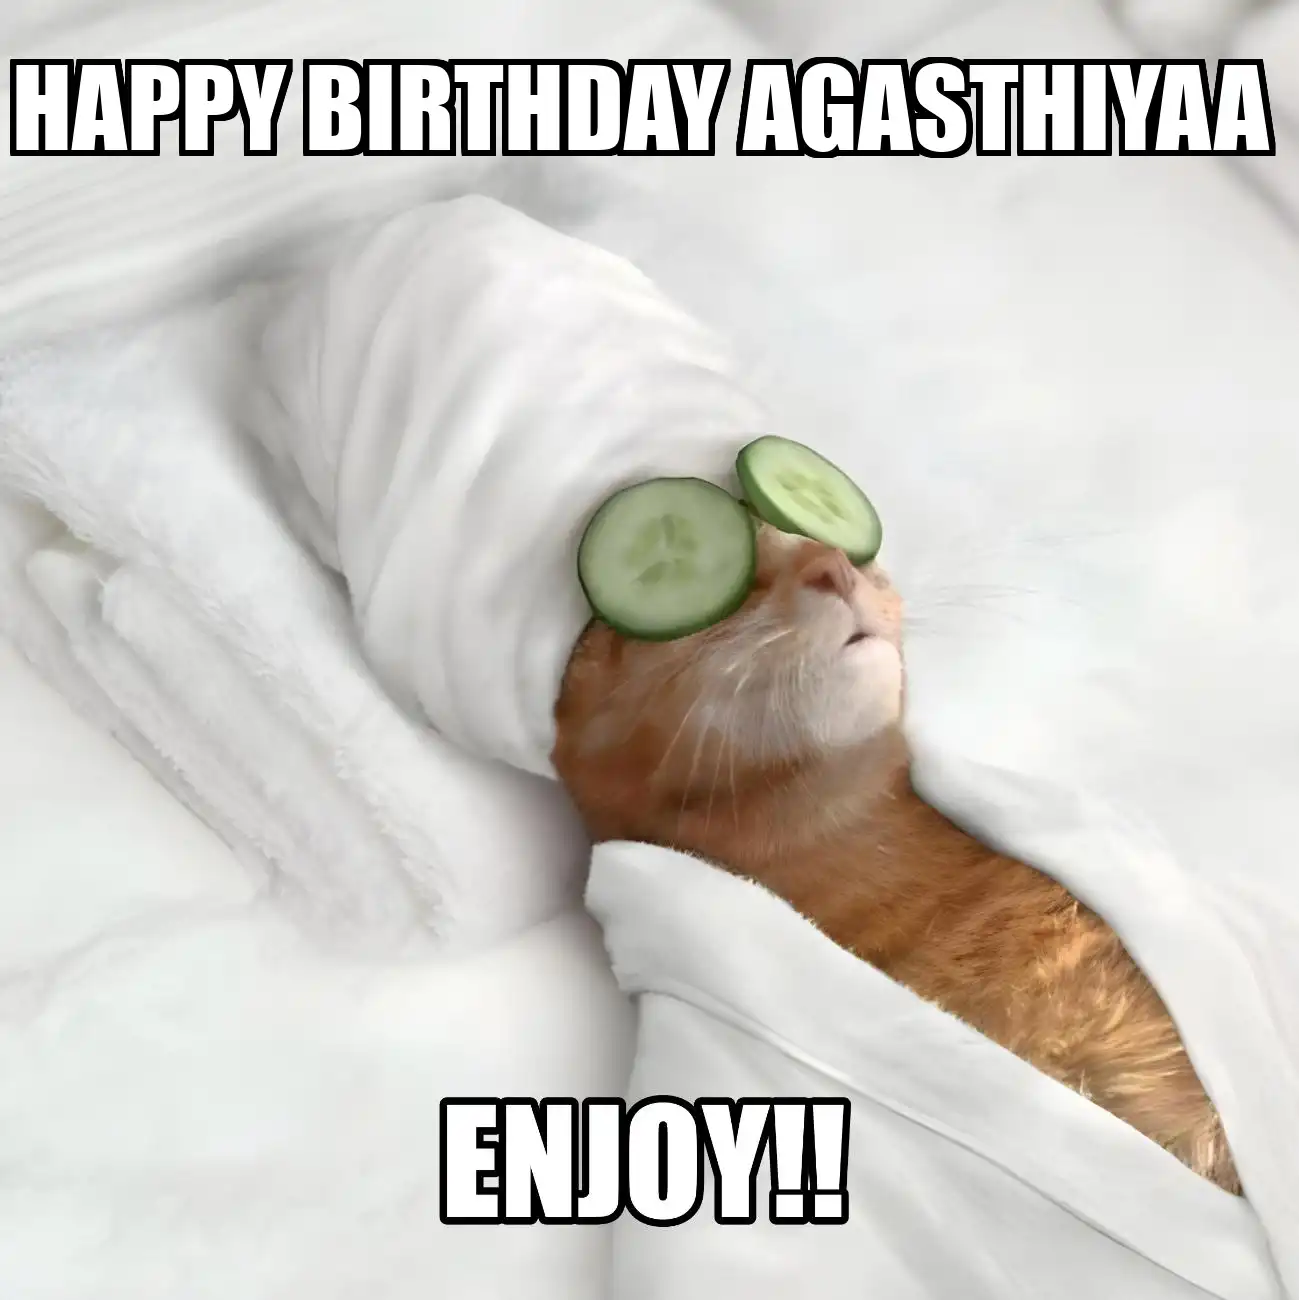 Happy Birthday Agasthiyaa Enjoy Cat Meme